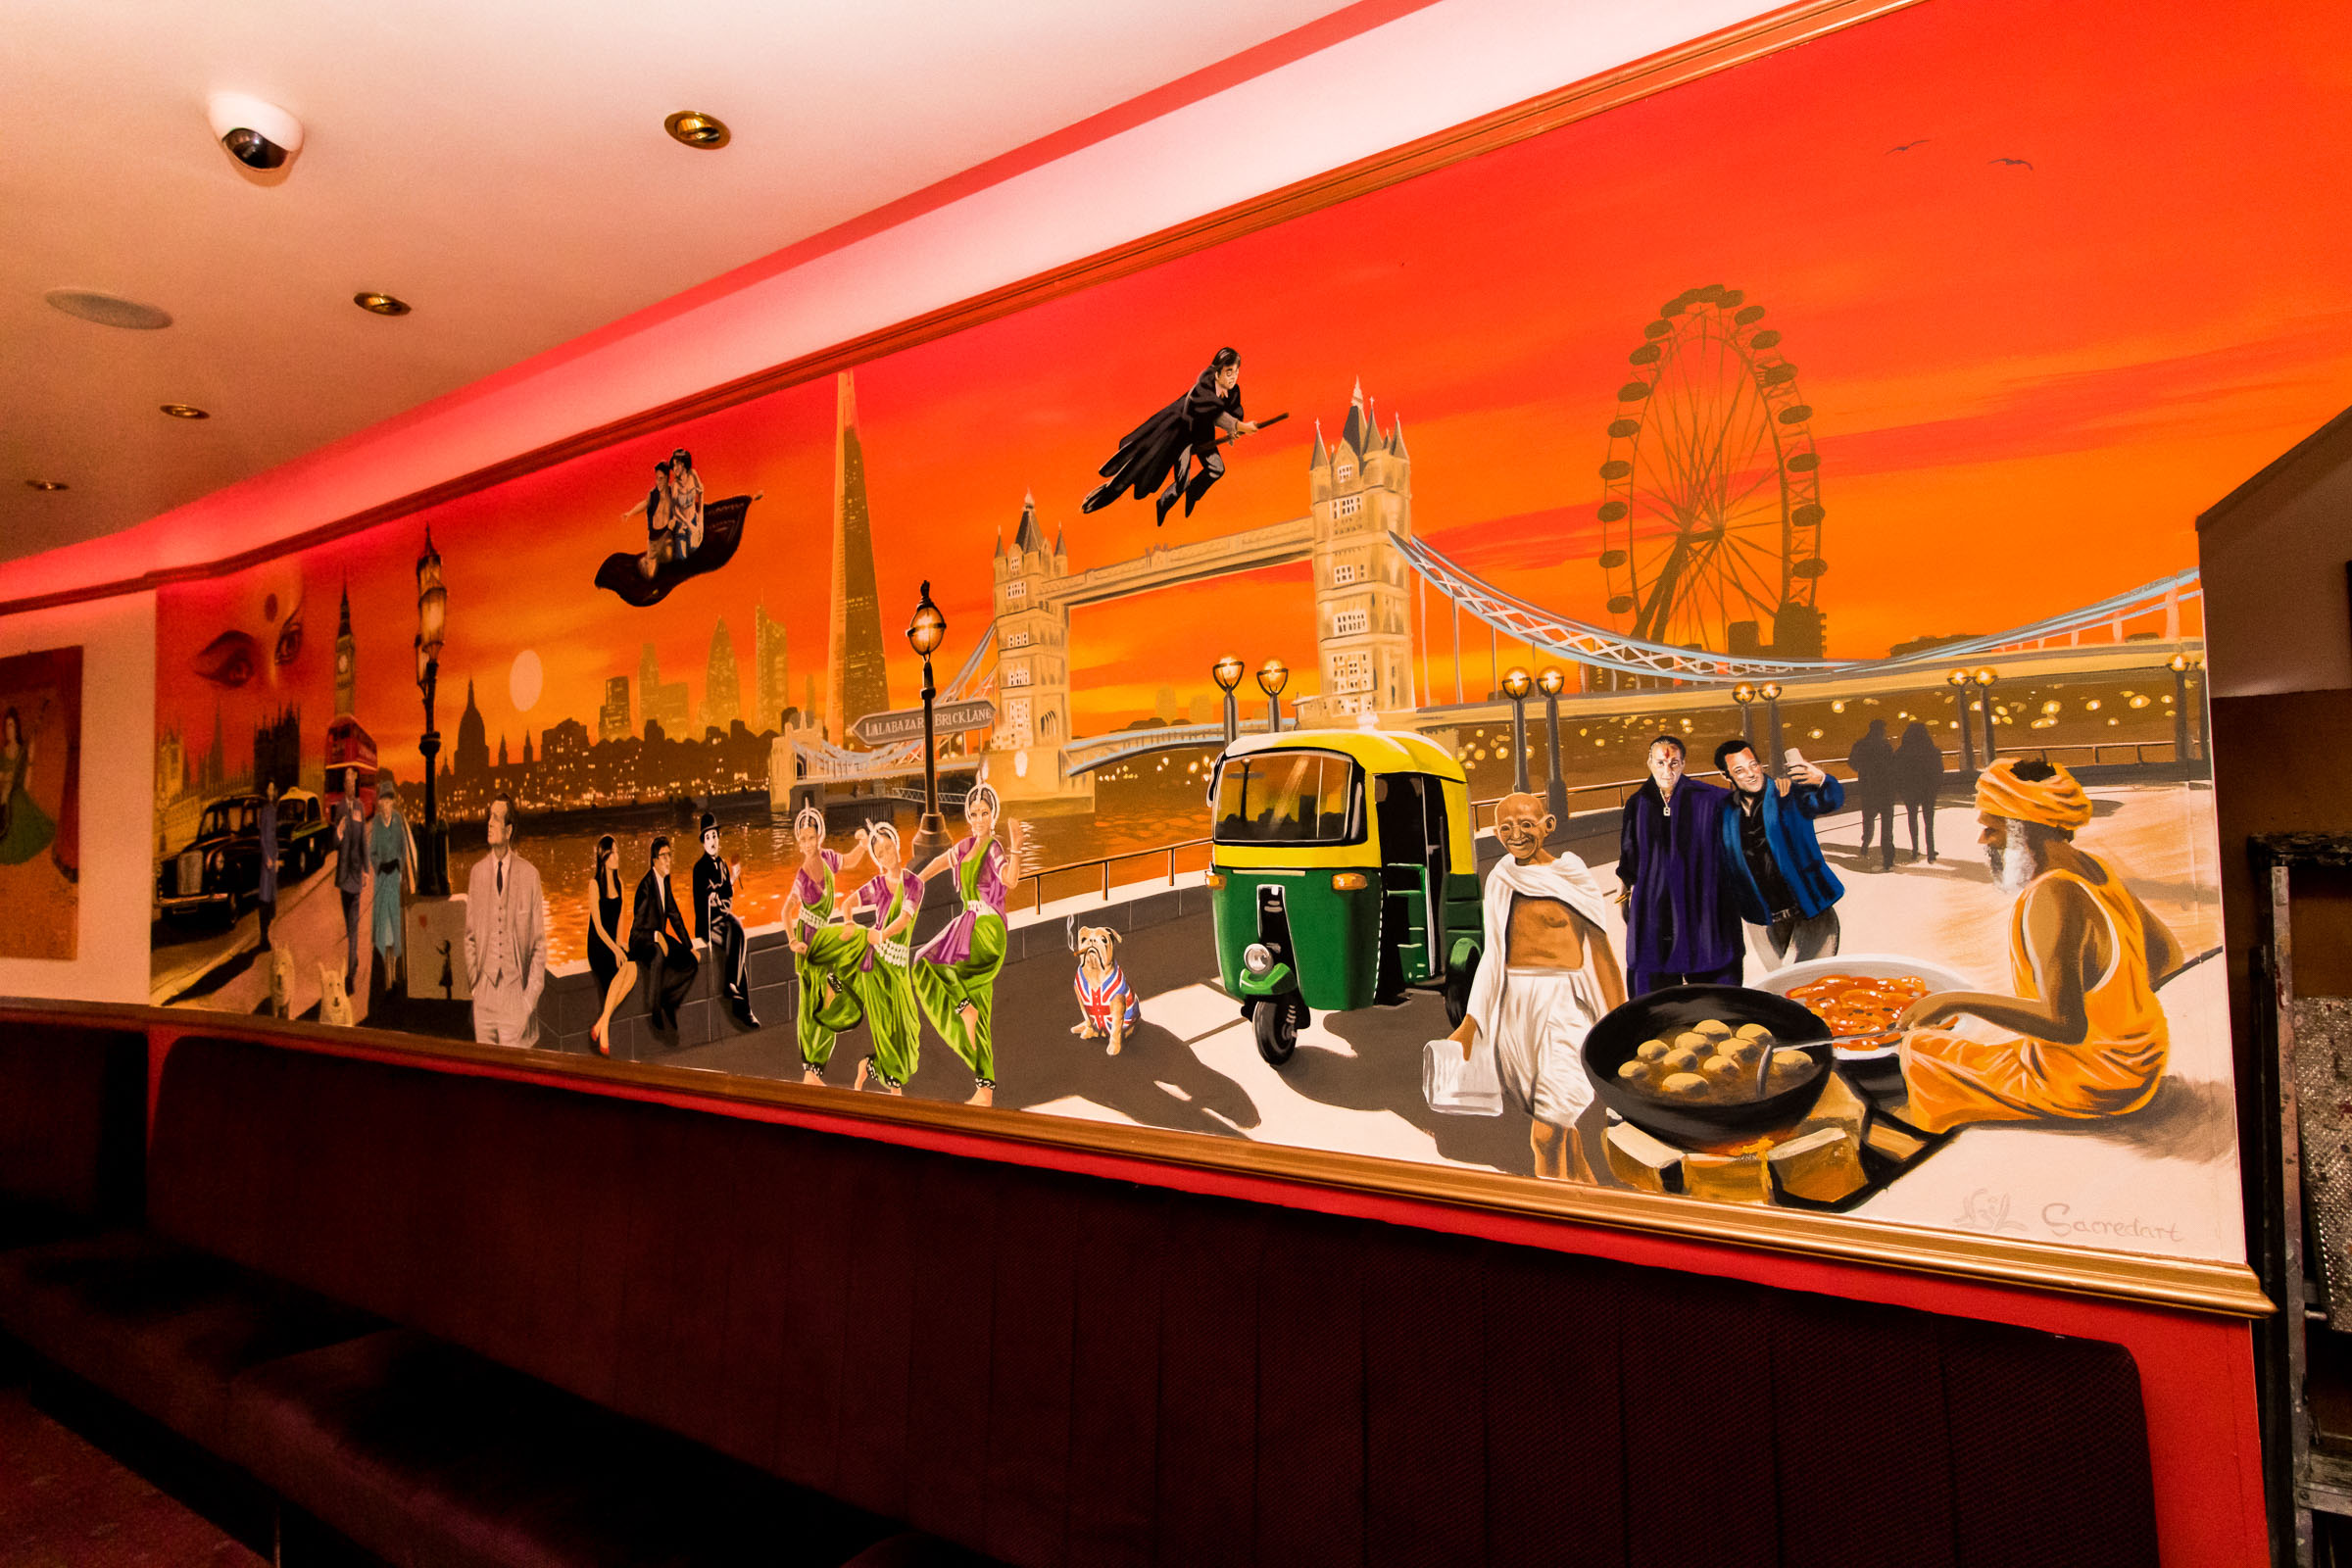 Aladin Mural Restaurant in Brick Lane